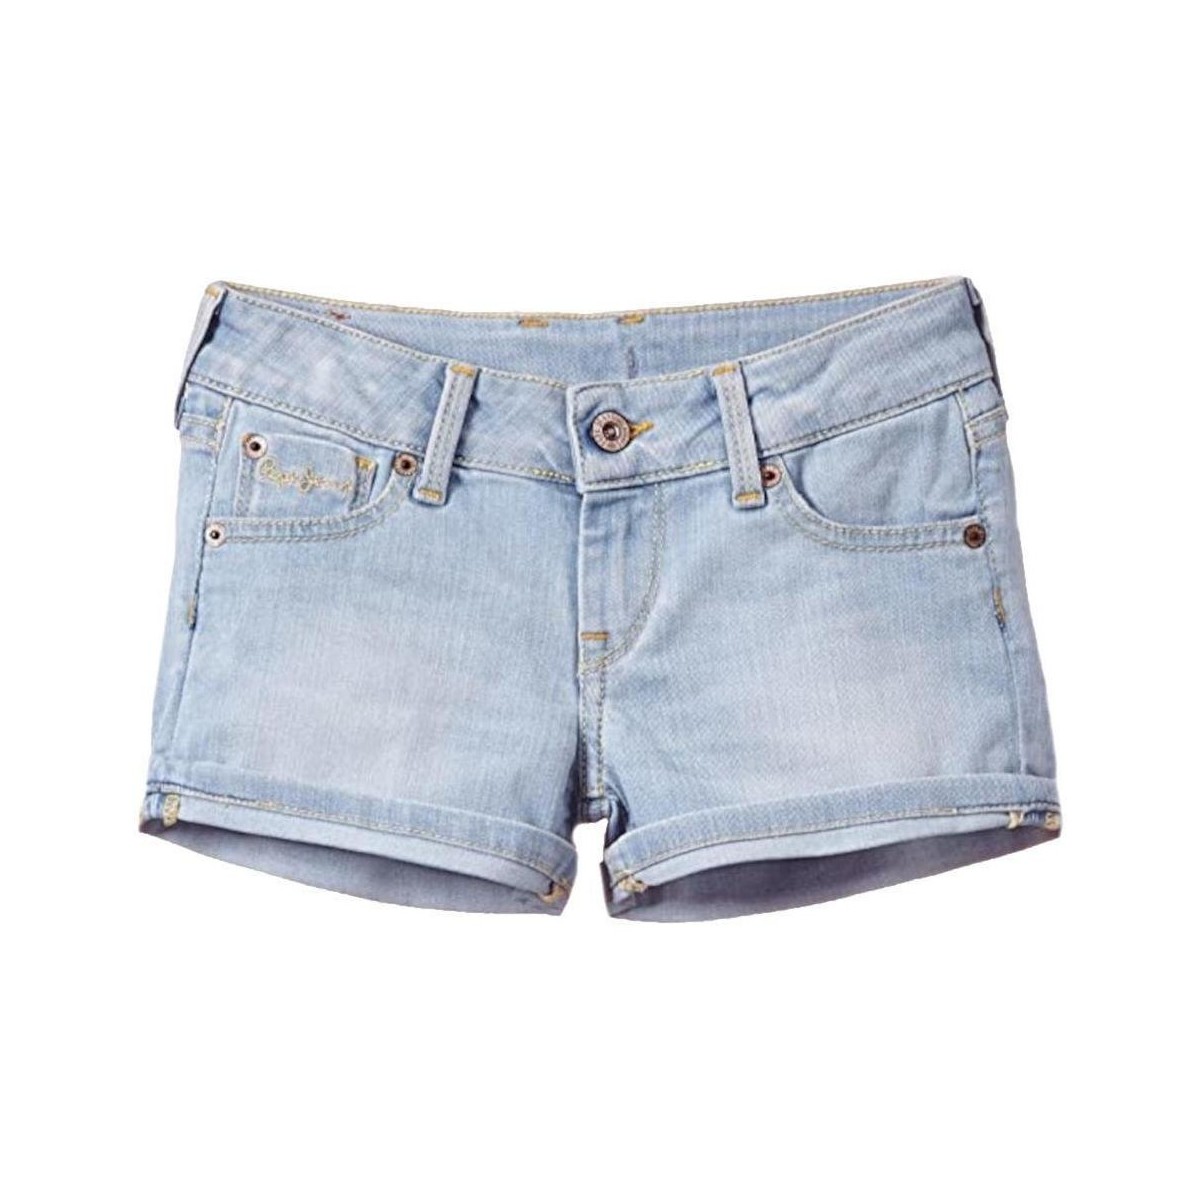 vaatteet Tytöt Shortsit / Bermuda-shortsit Pepe jeans  Sininen